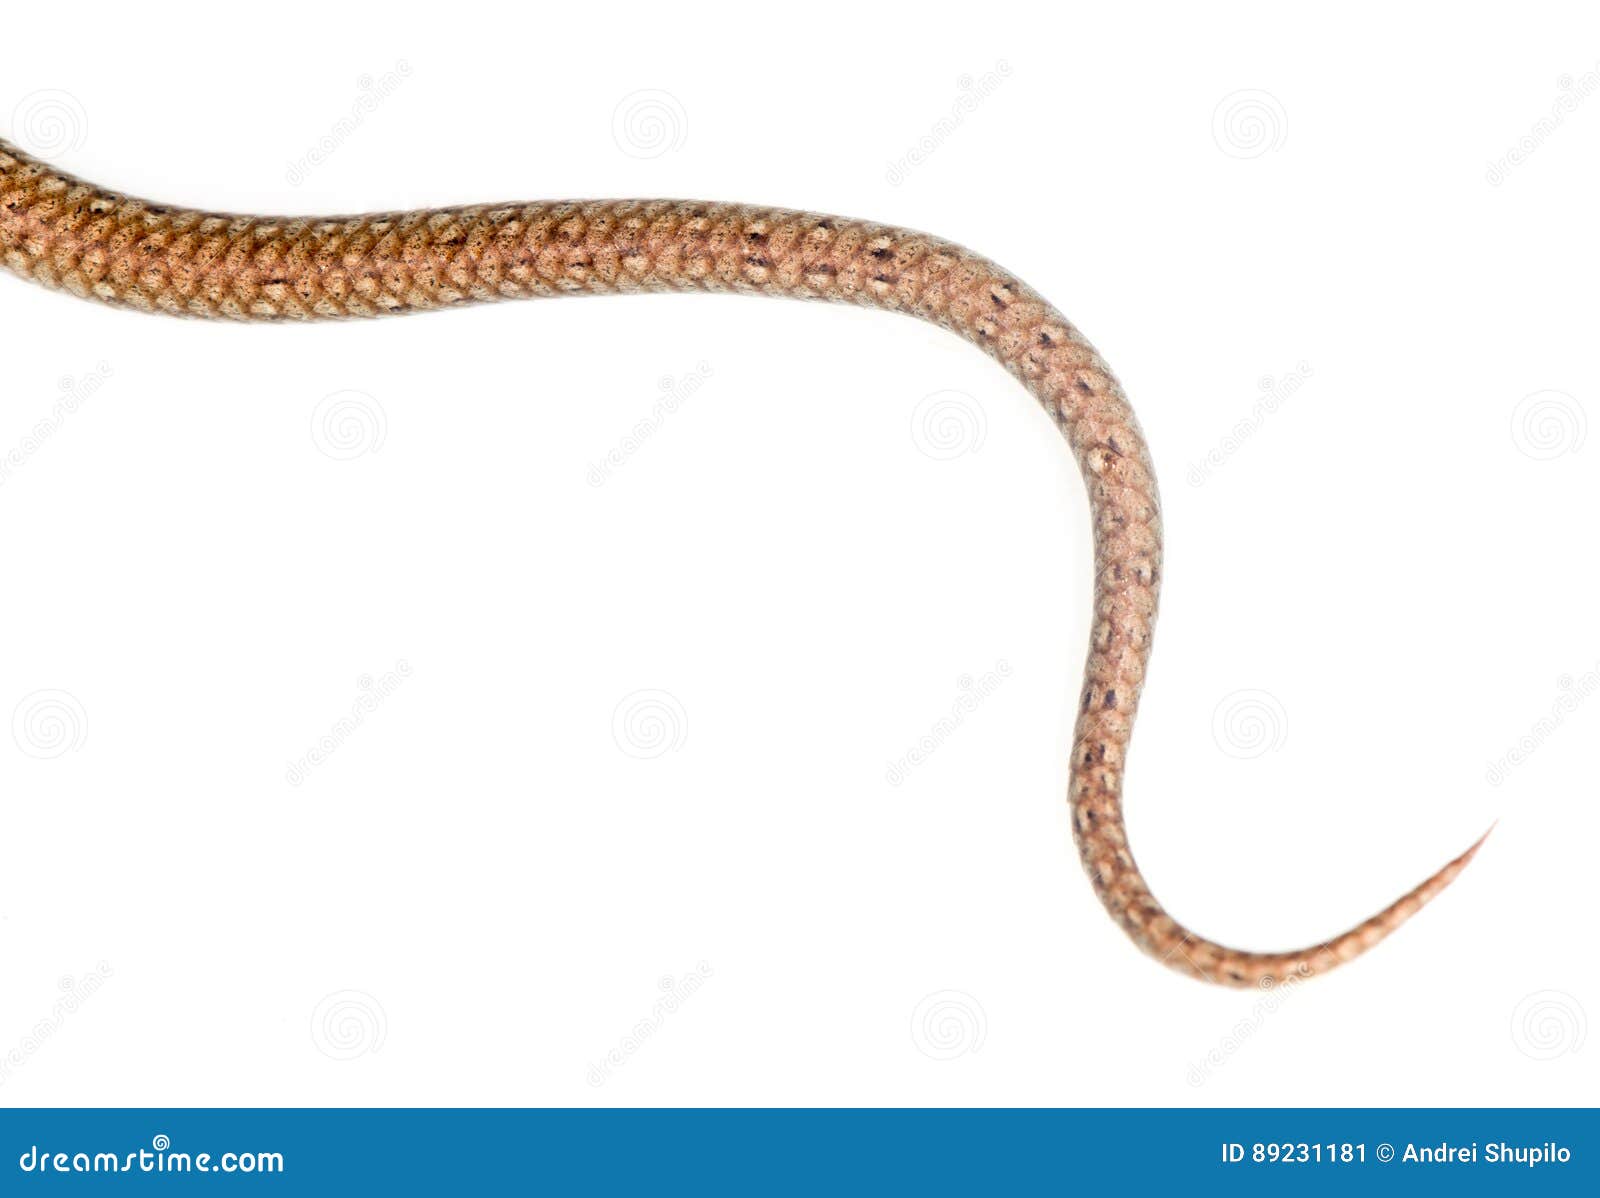 tail-snake-white-background-89231181.jpg